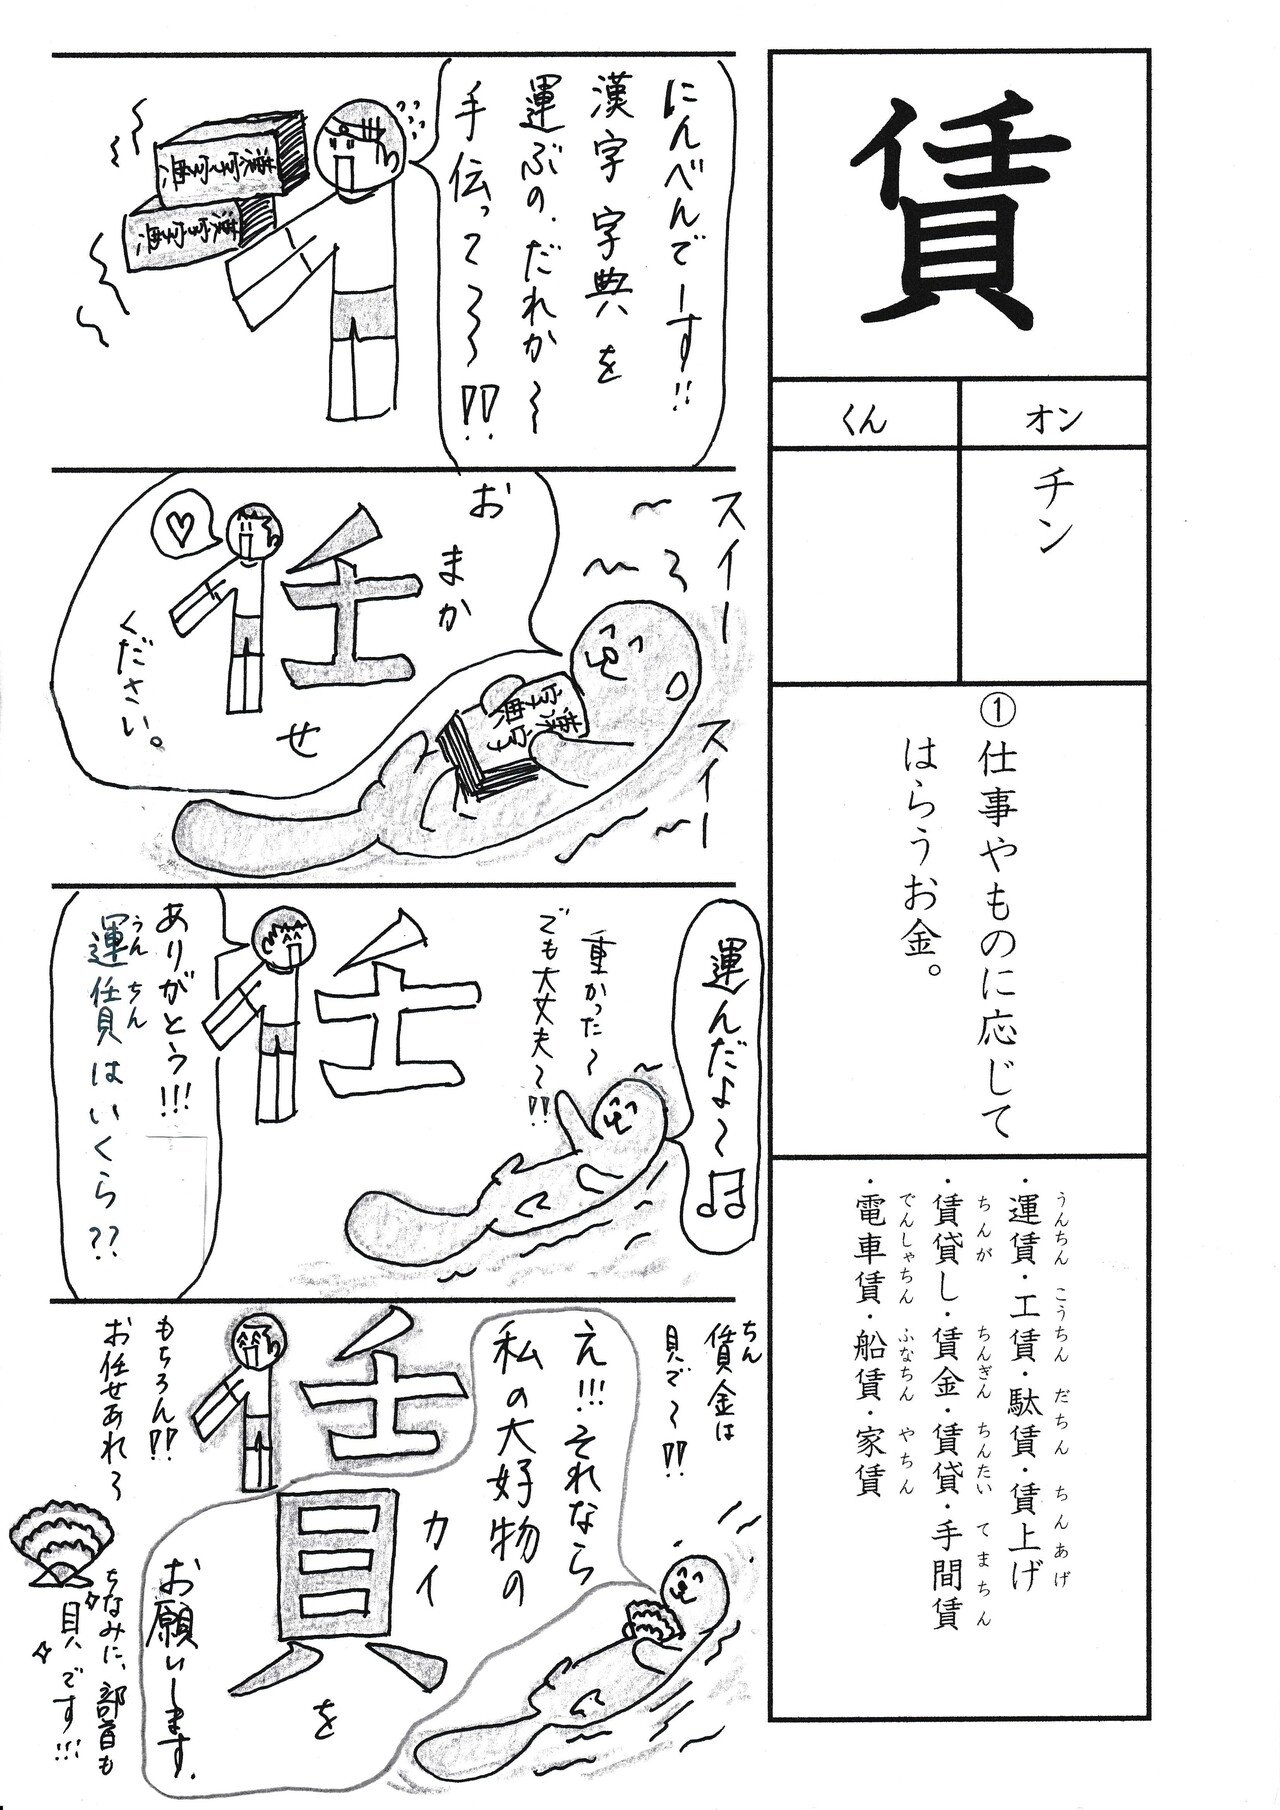 勉強法 漢字 賃 を覚える なるほど四コマ漫画 Sun Sunny D01 Note